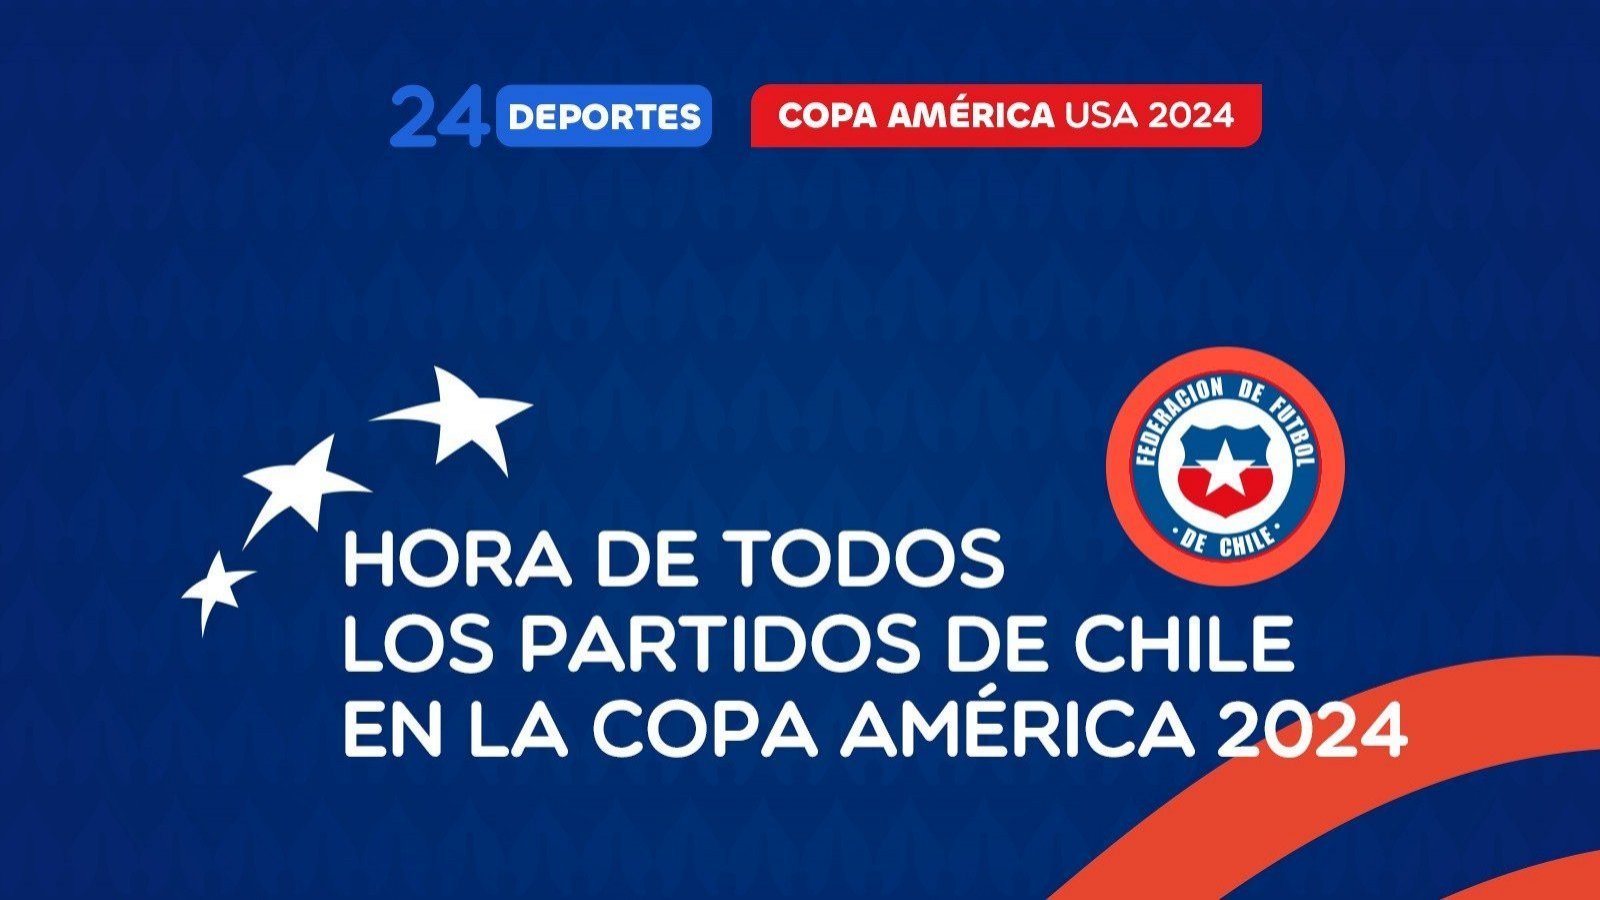 Hora de todos los partidos de Chile en Copa América 2024.